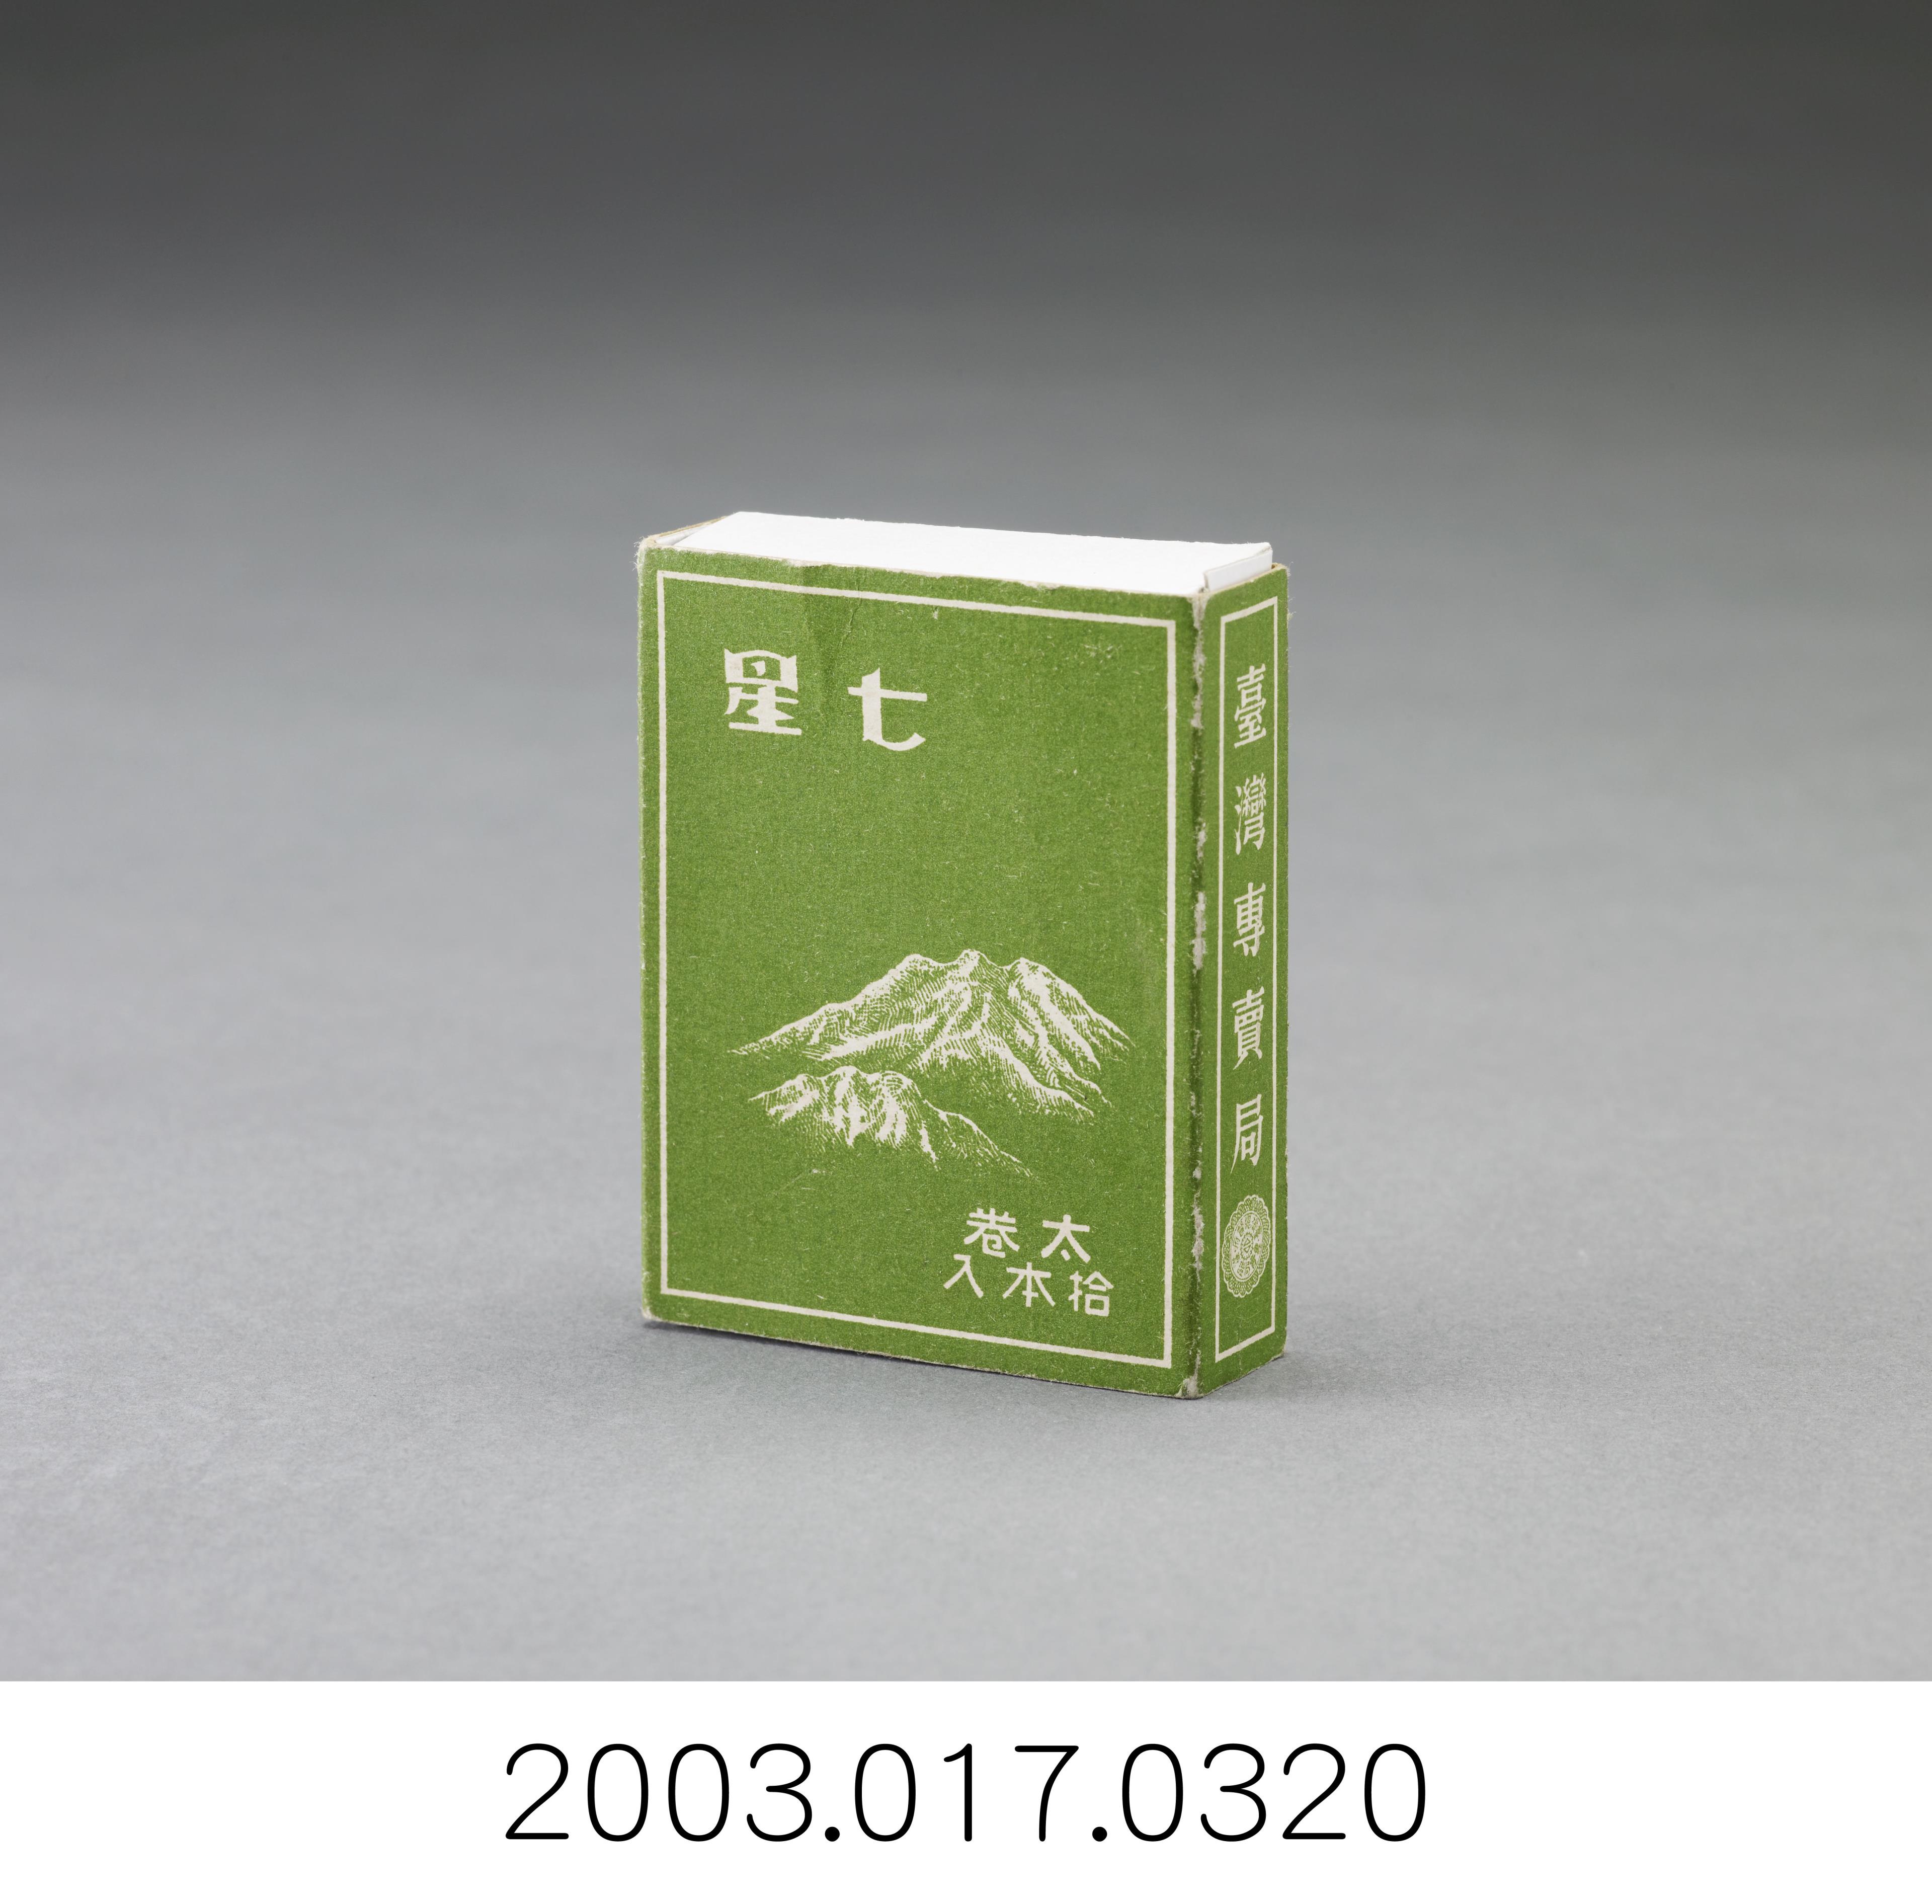 臺灣專賣局七星牌香菸盒 (共2張)